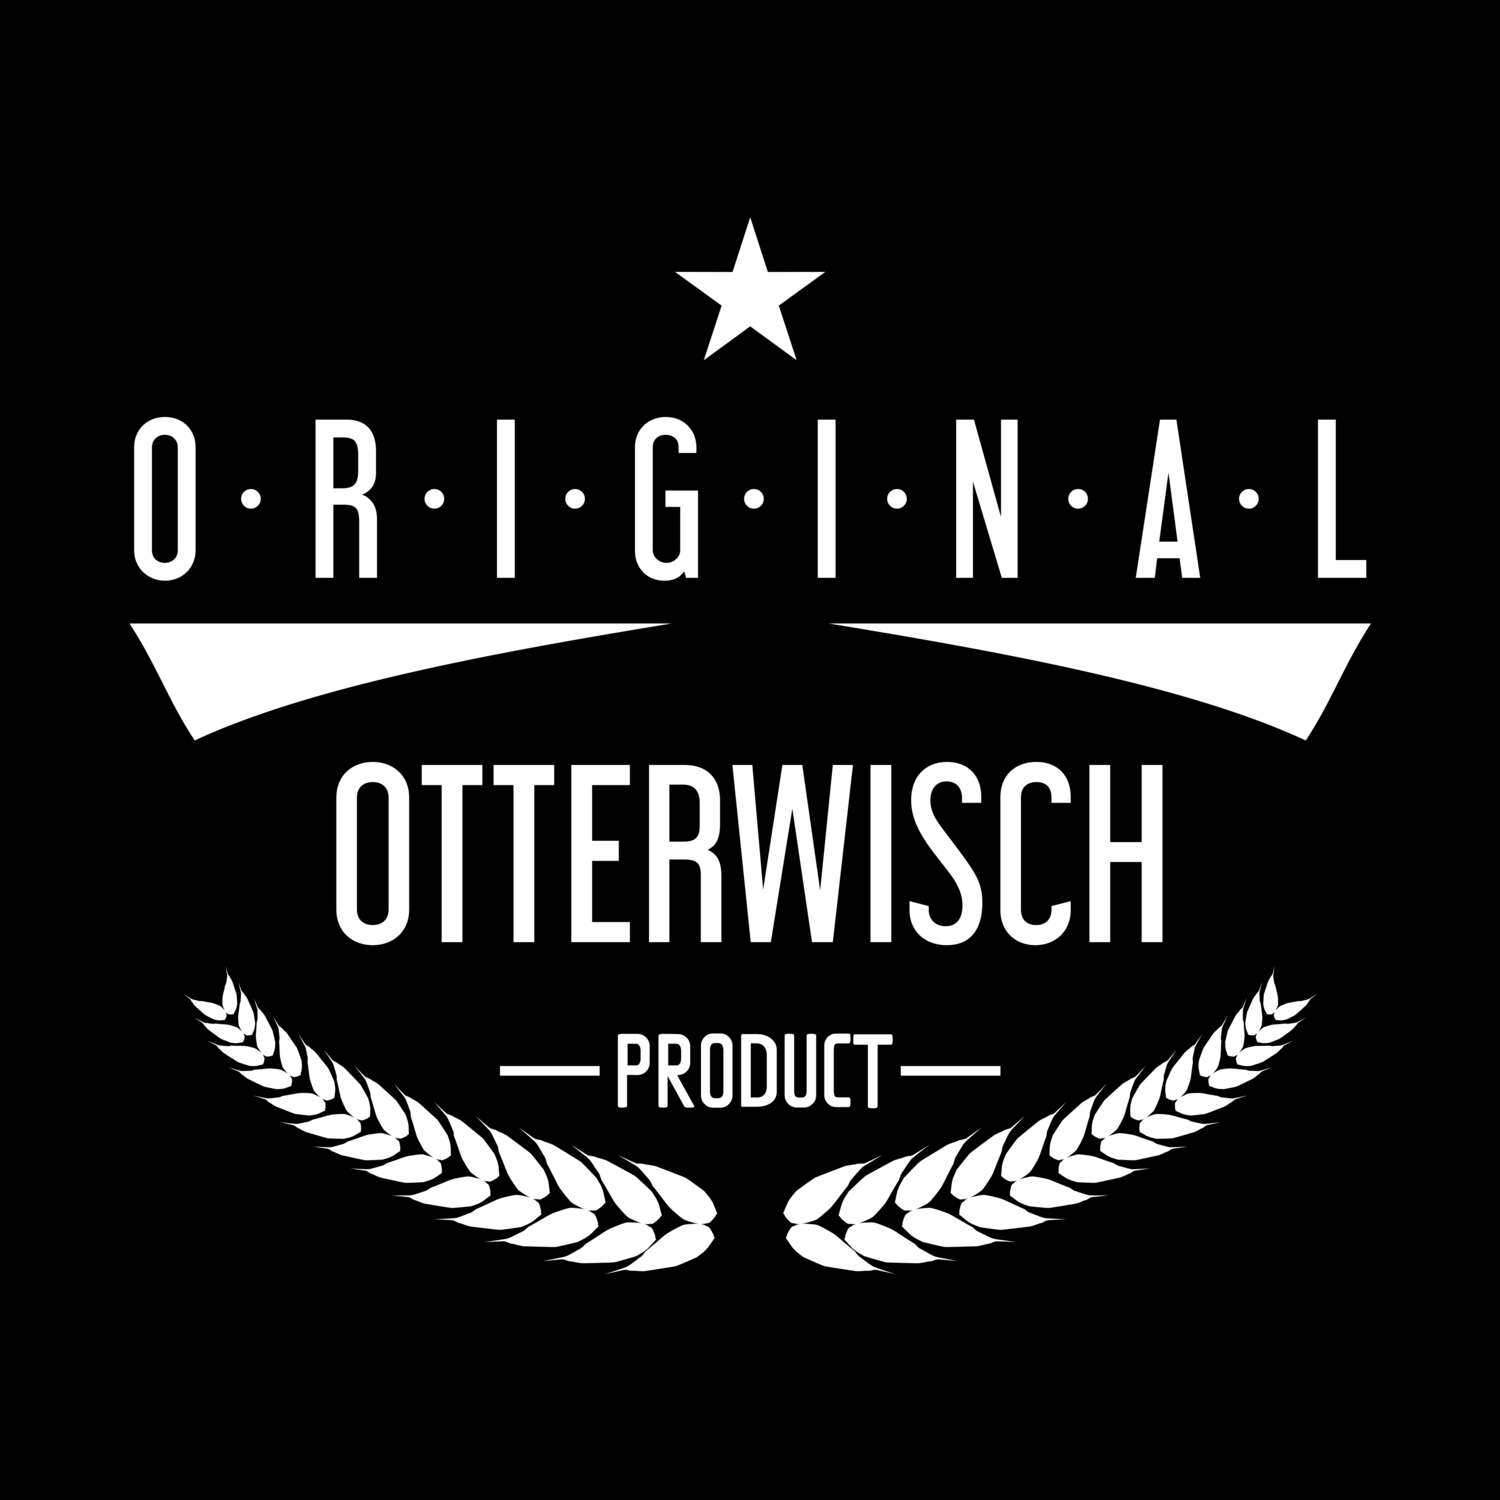 Otterwisch T-Shirt »Original Product«